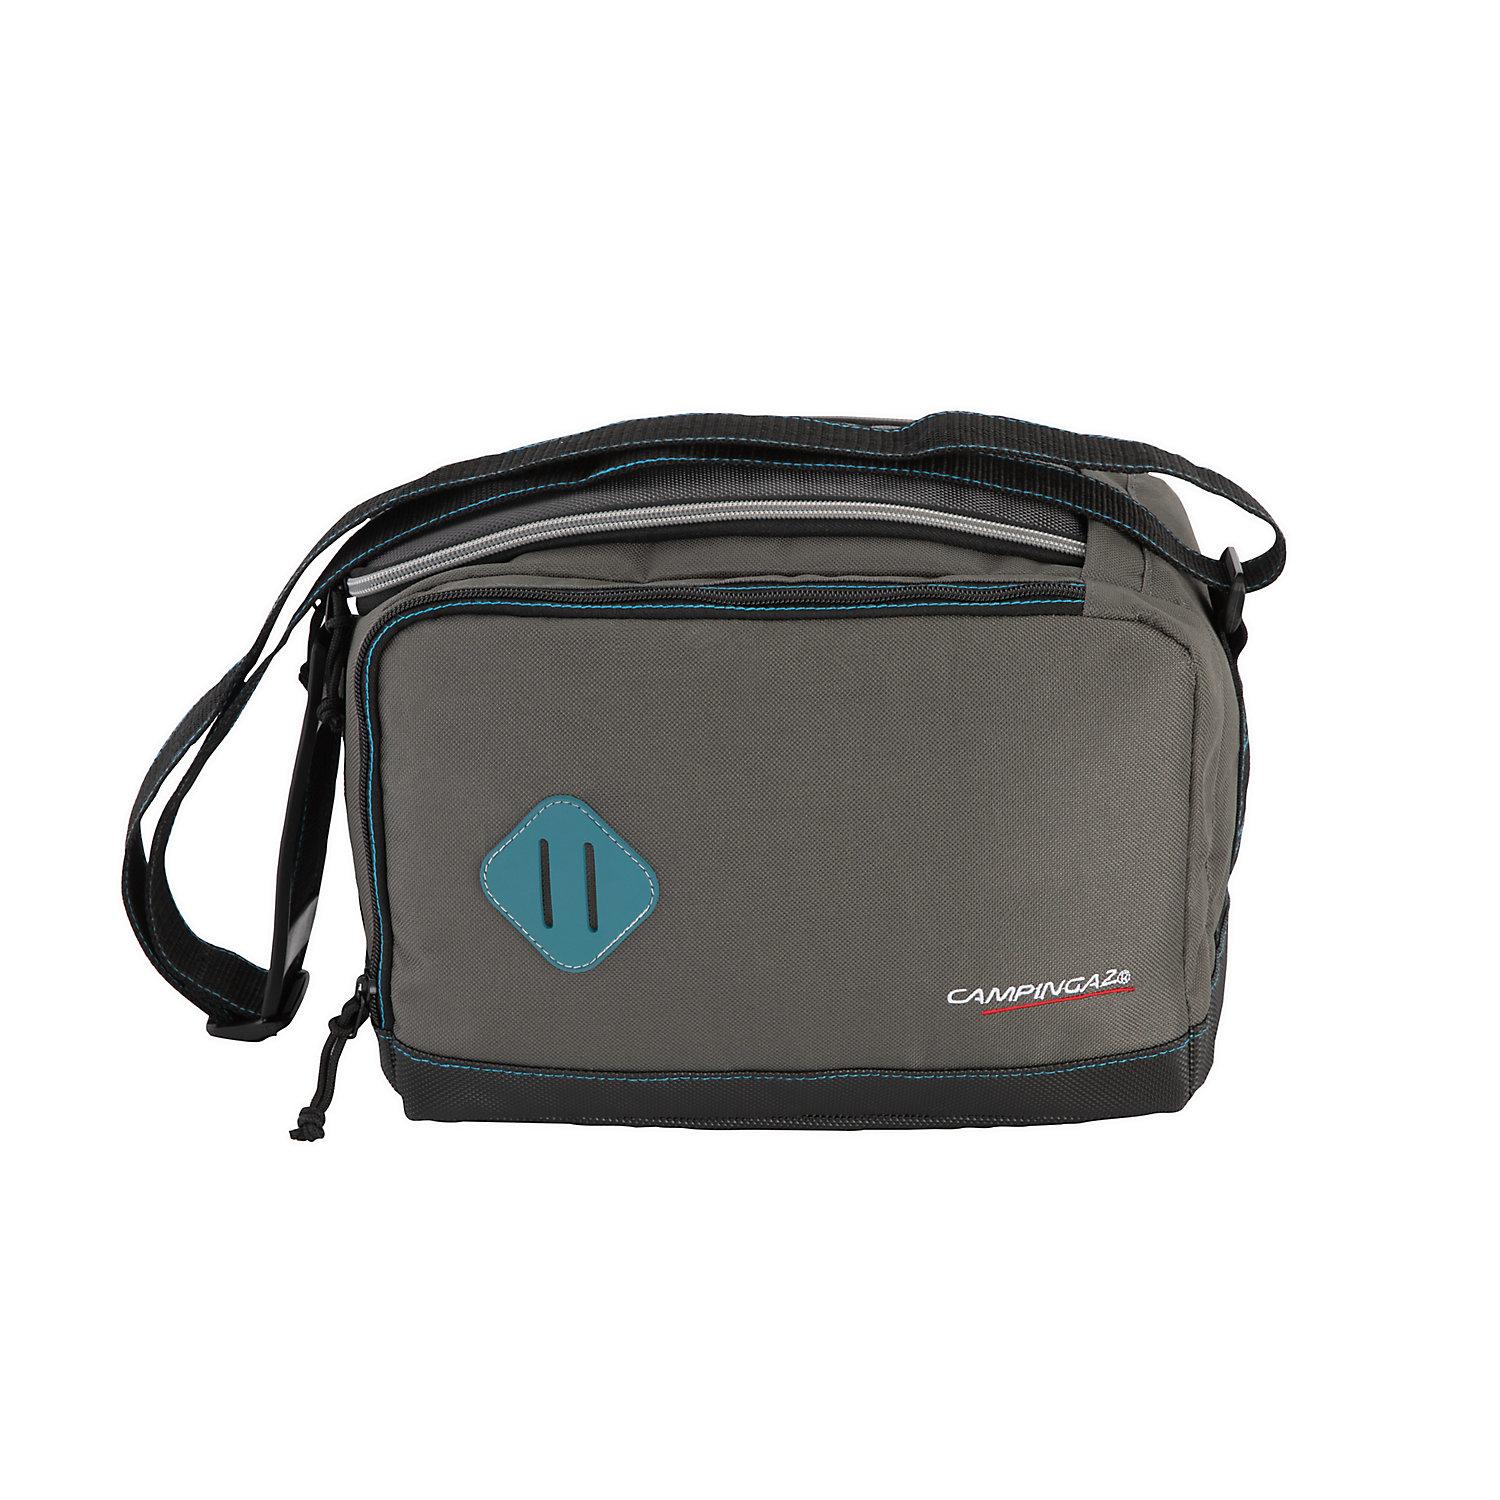 Campingaz The Office - Coolbag 9L, isolierte Kühltasche, antibakterielles Material, separate Tasche für elektronische Geräte